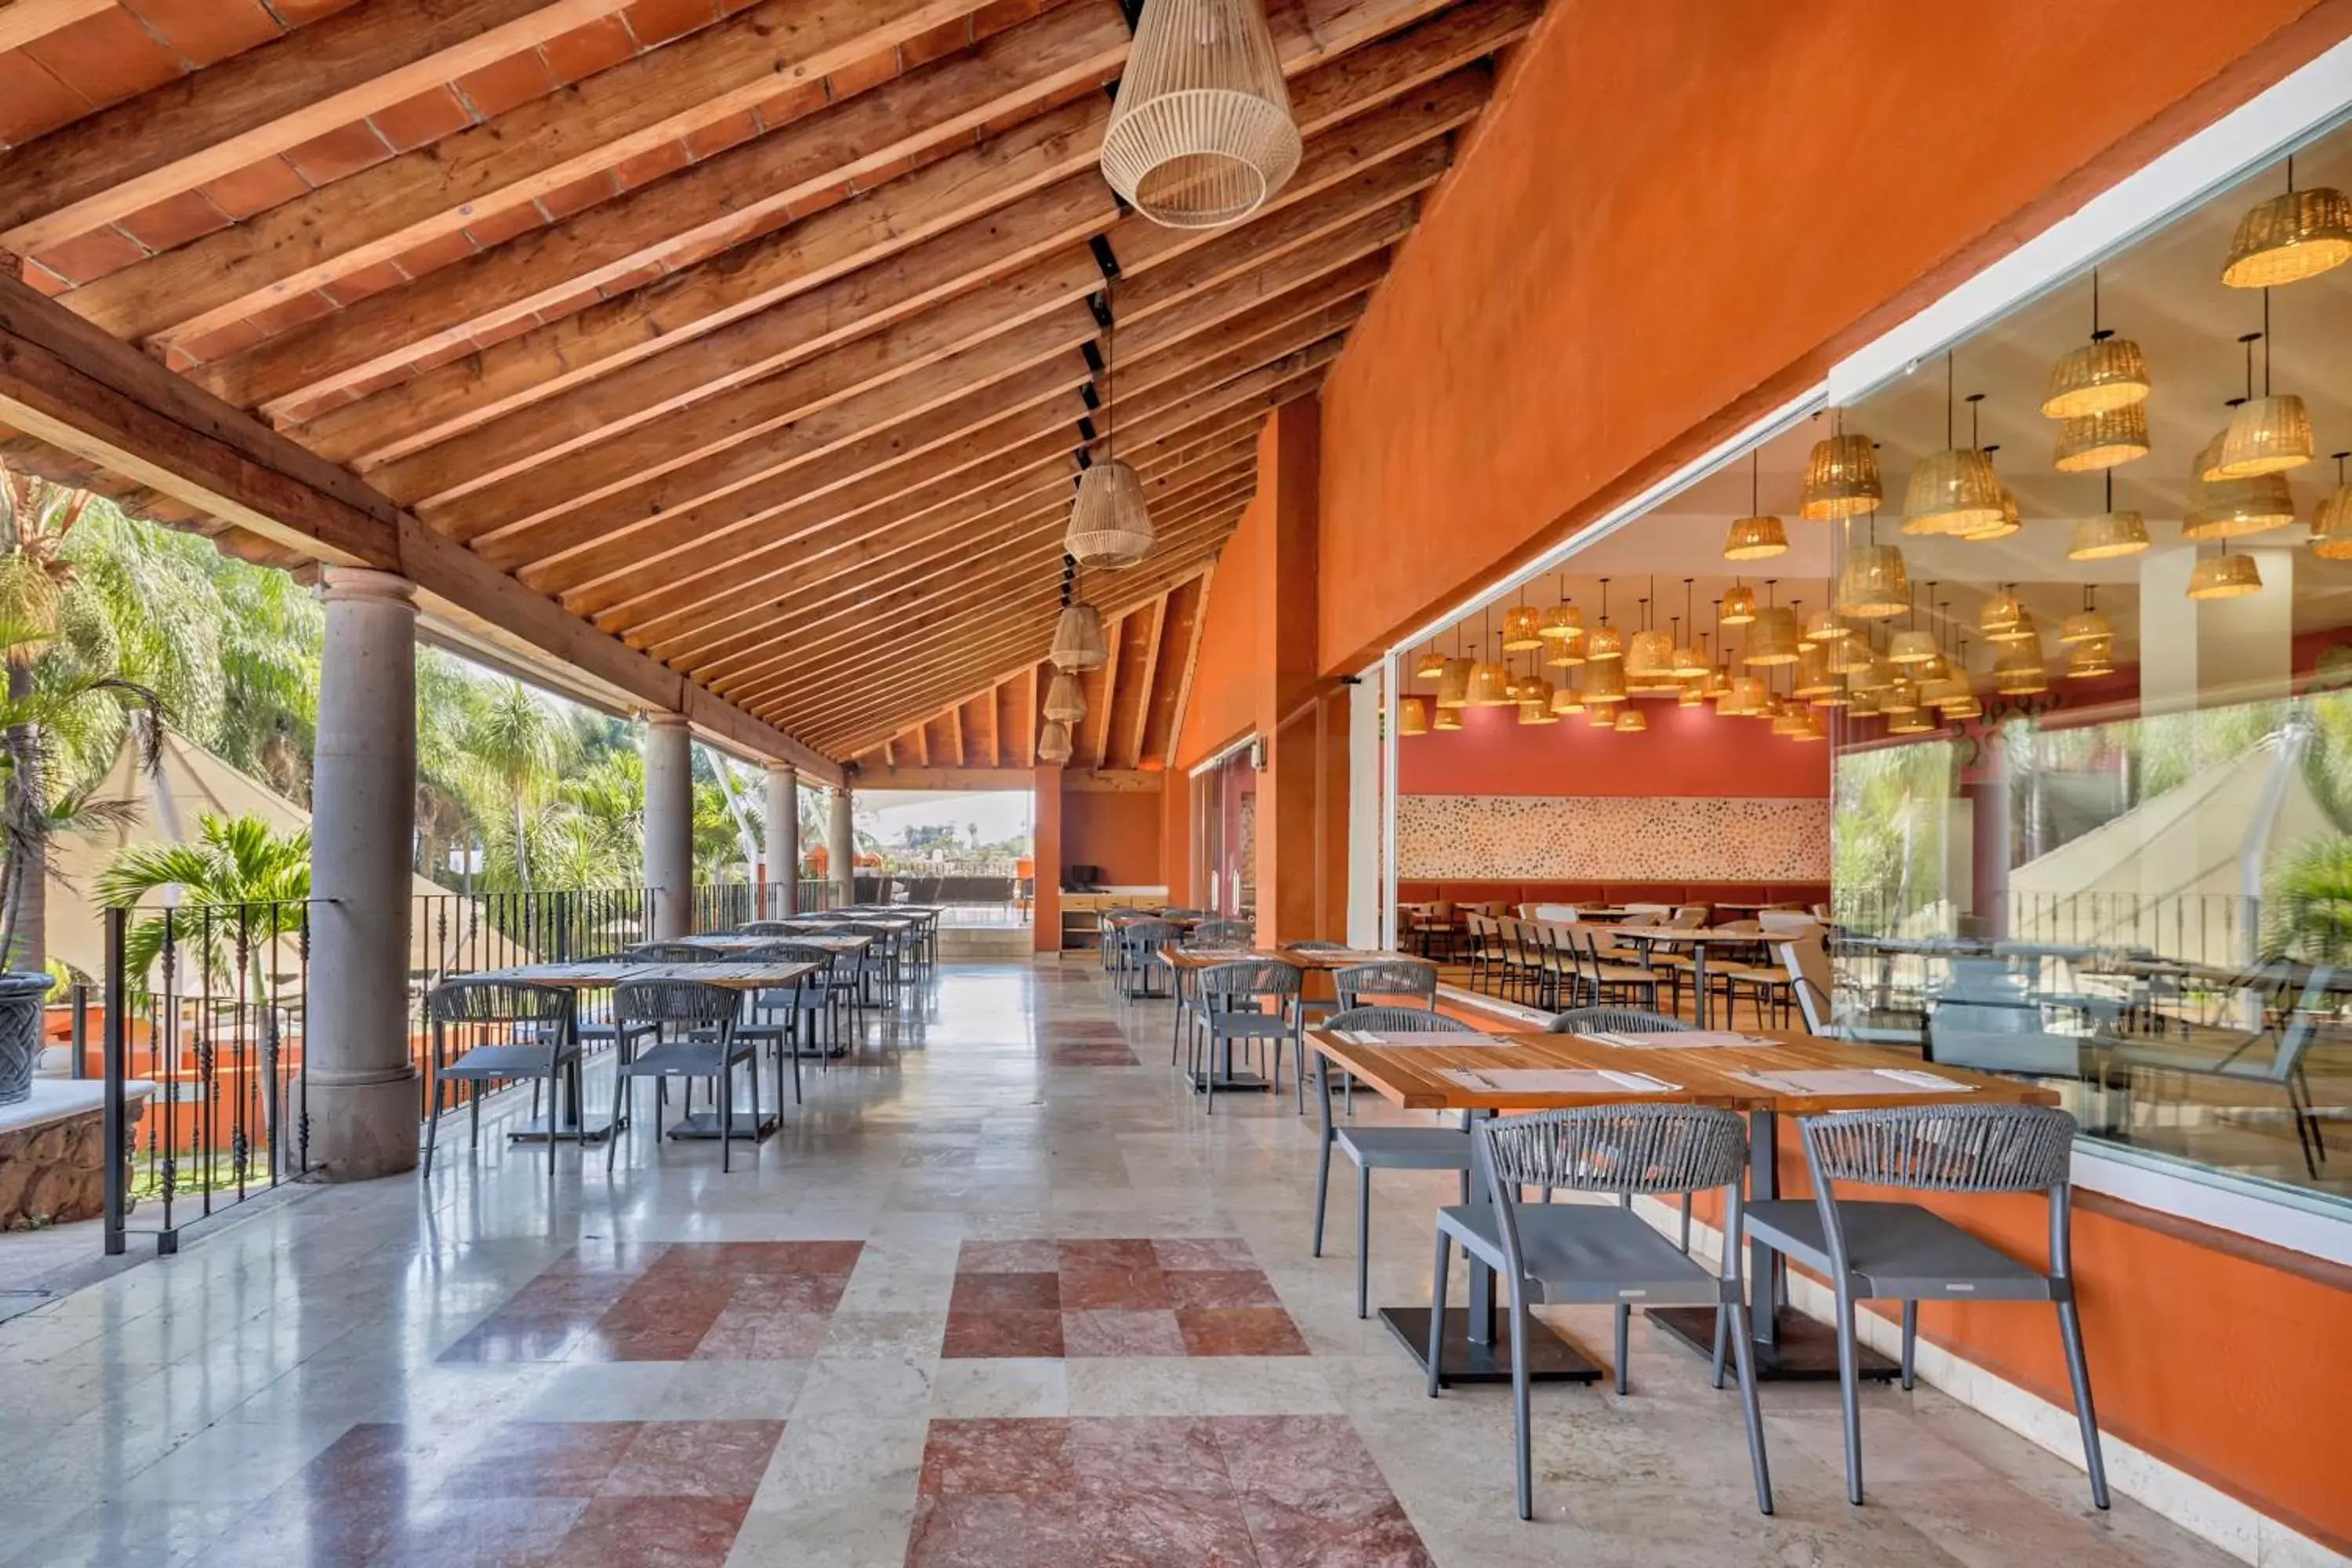 Other, Restaurant/Places to Eat in Fiesta Inn Cuernavaca